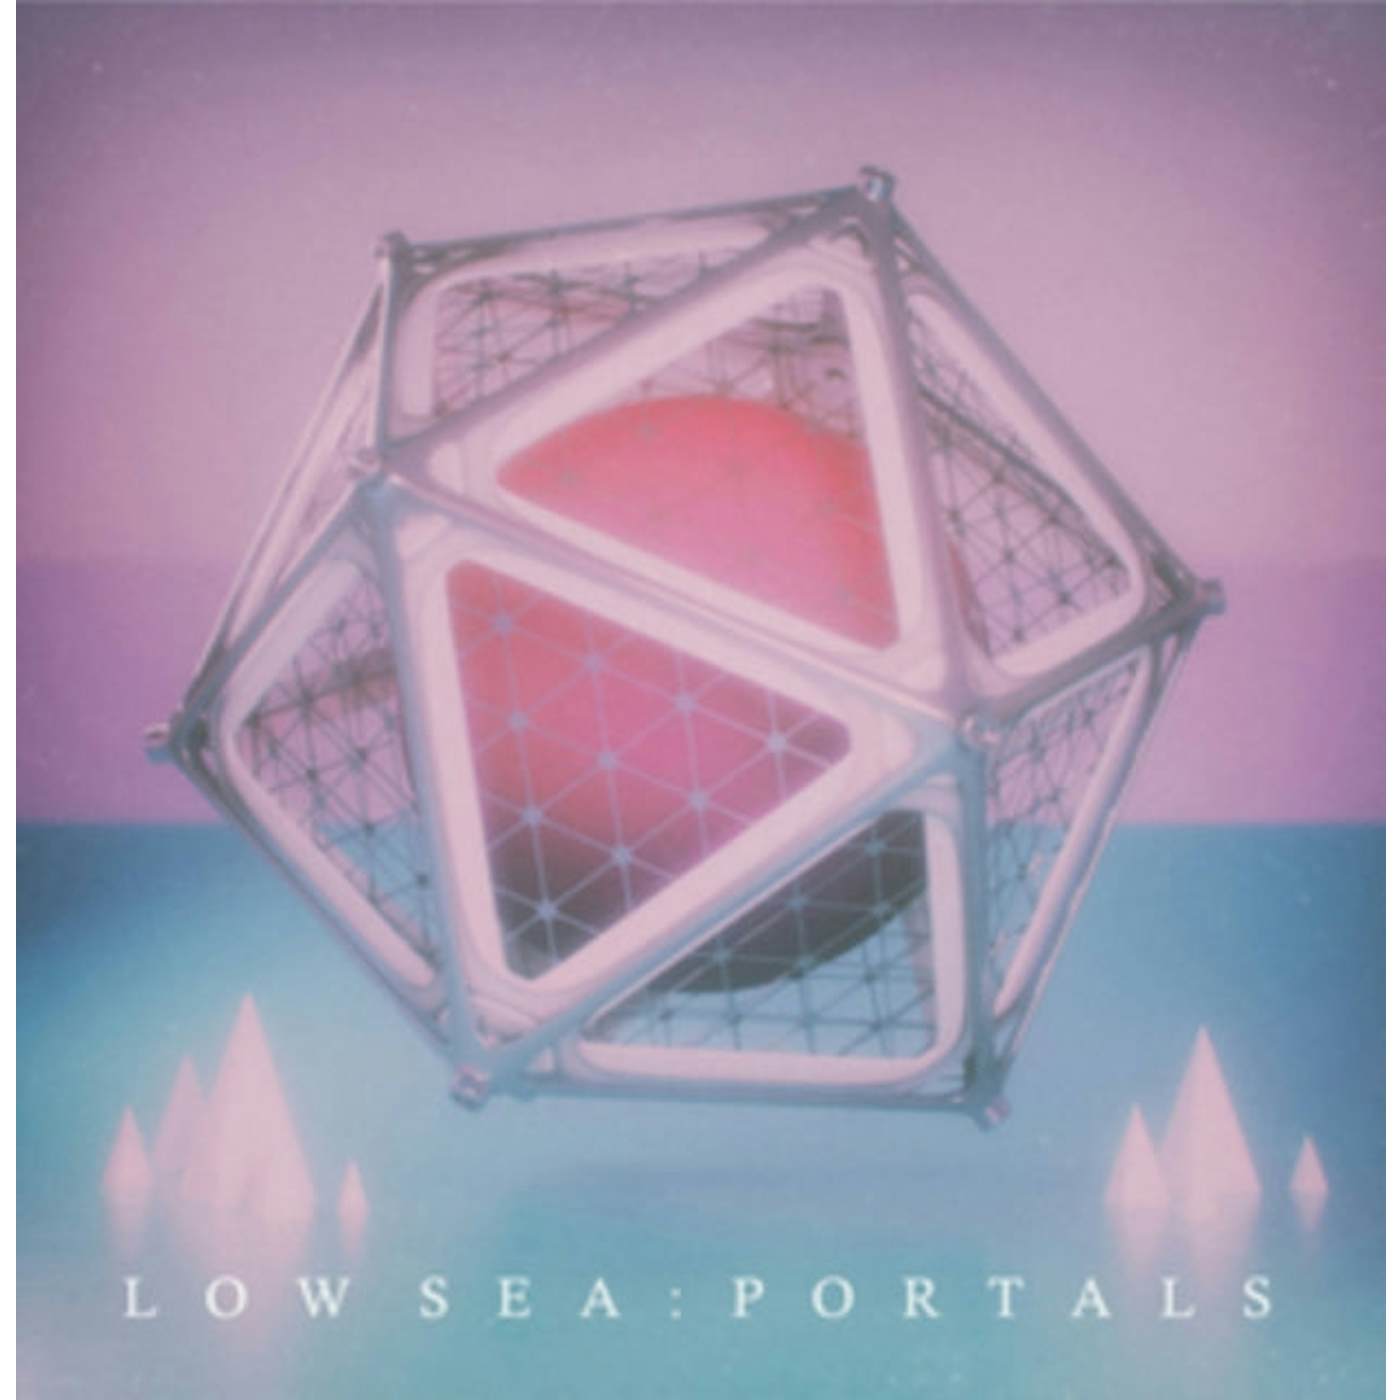 Low Sea LP - Portals (Vinyl)